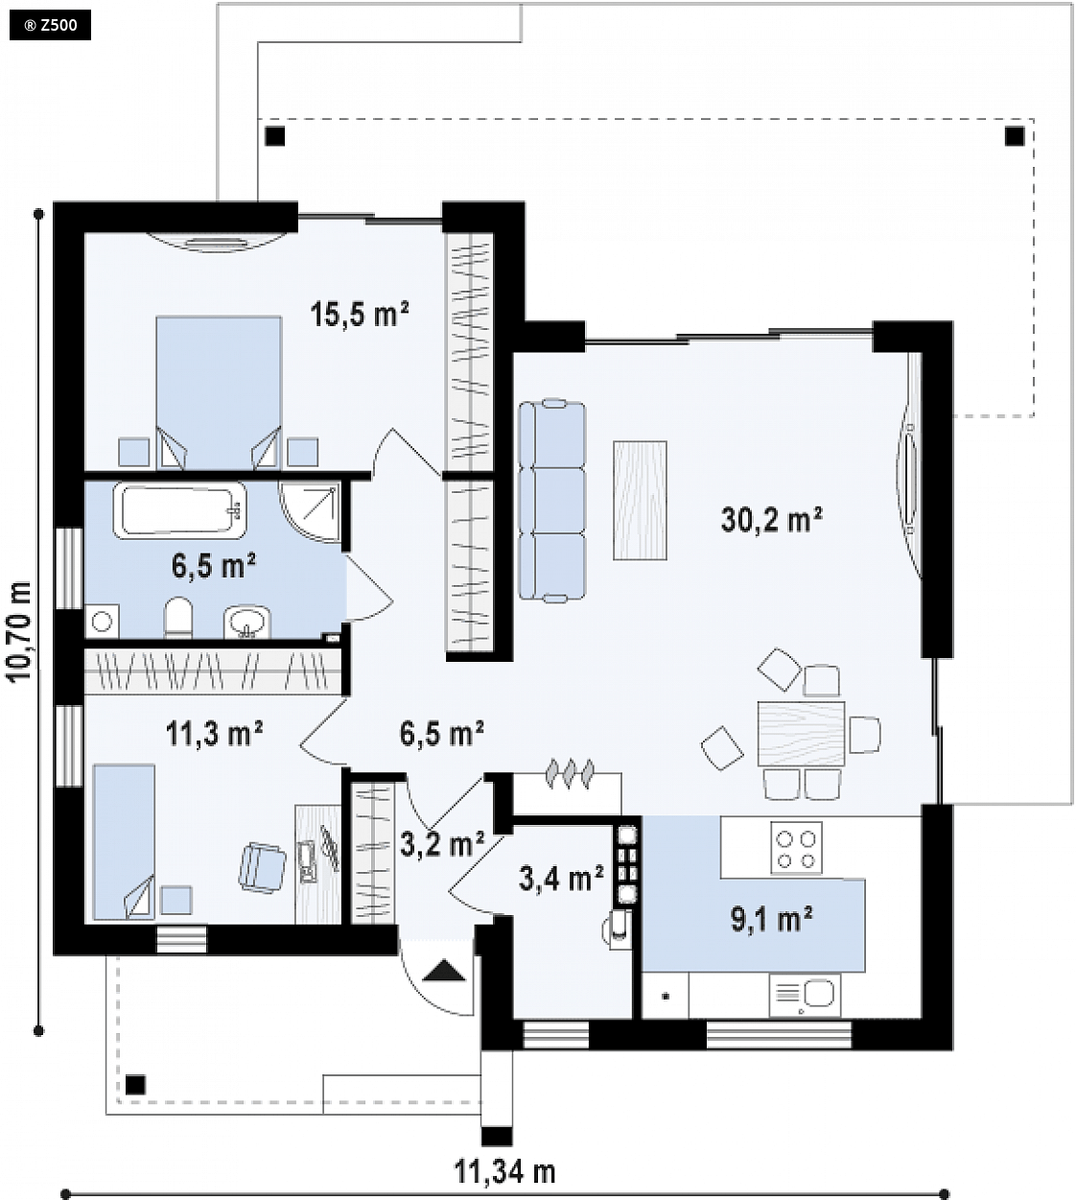 bản vẽ mẫu nhà cấp 4 đẹp với 2 phòng ngủ 